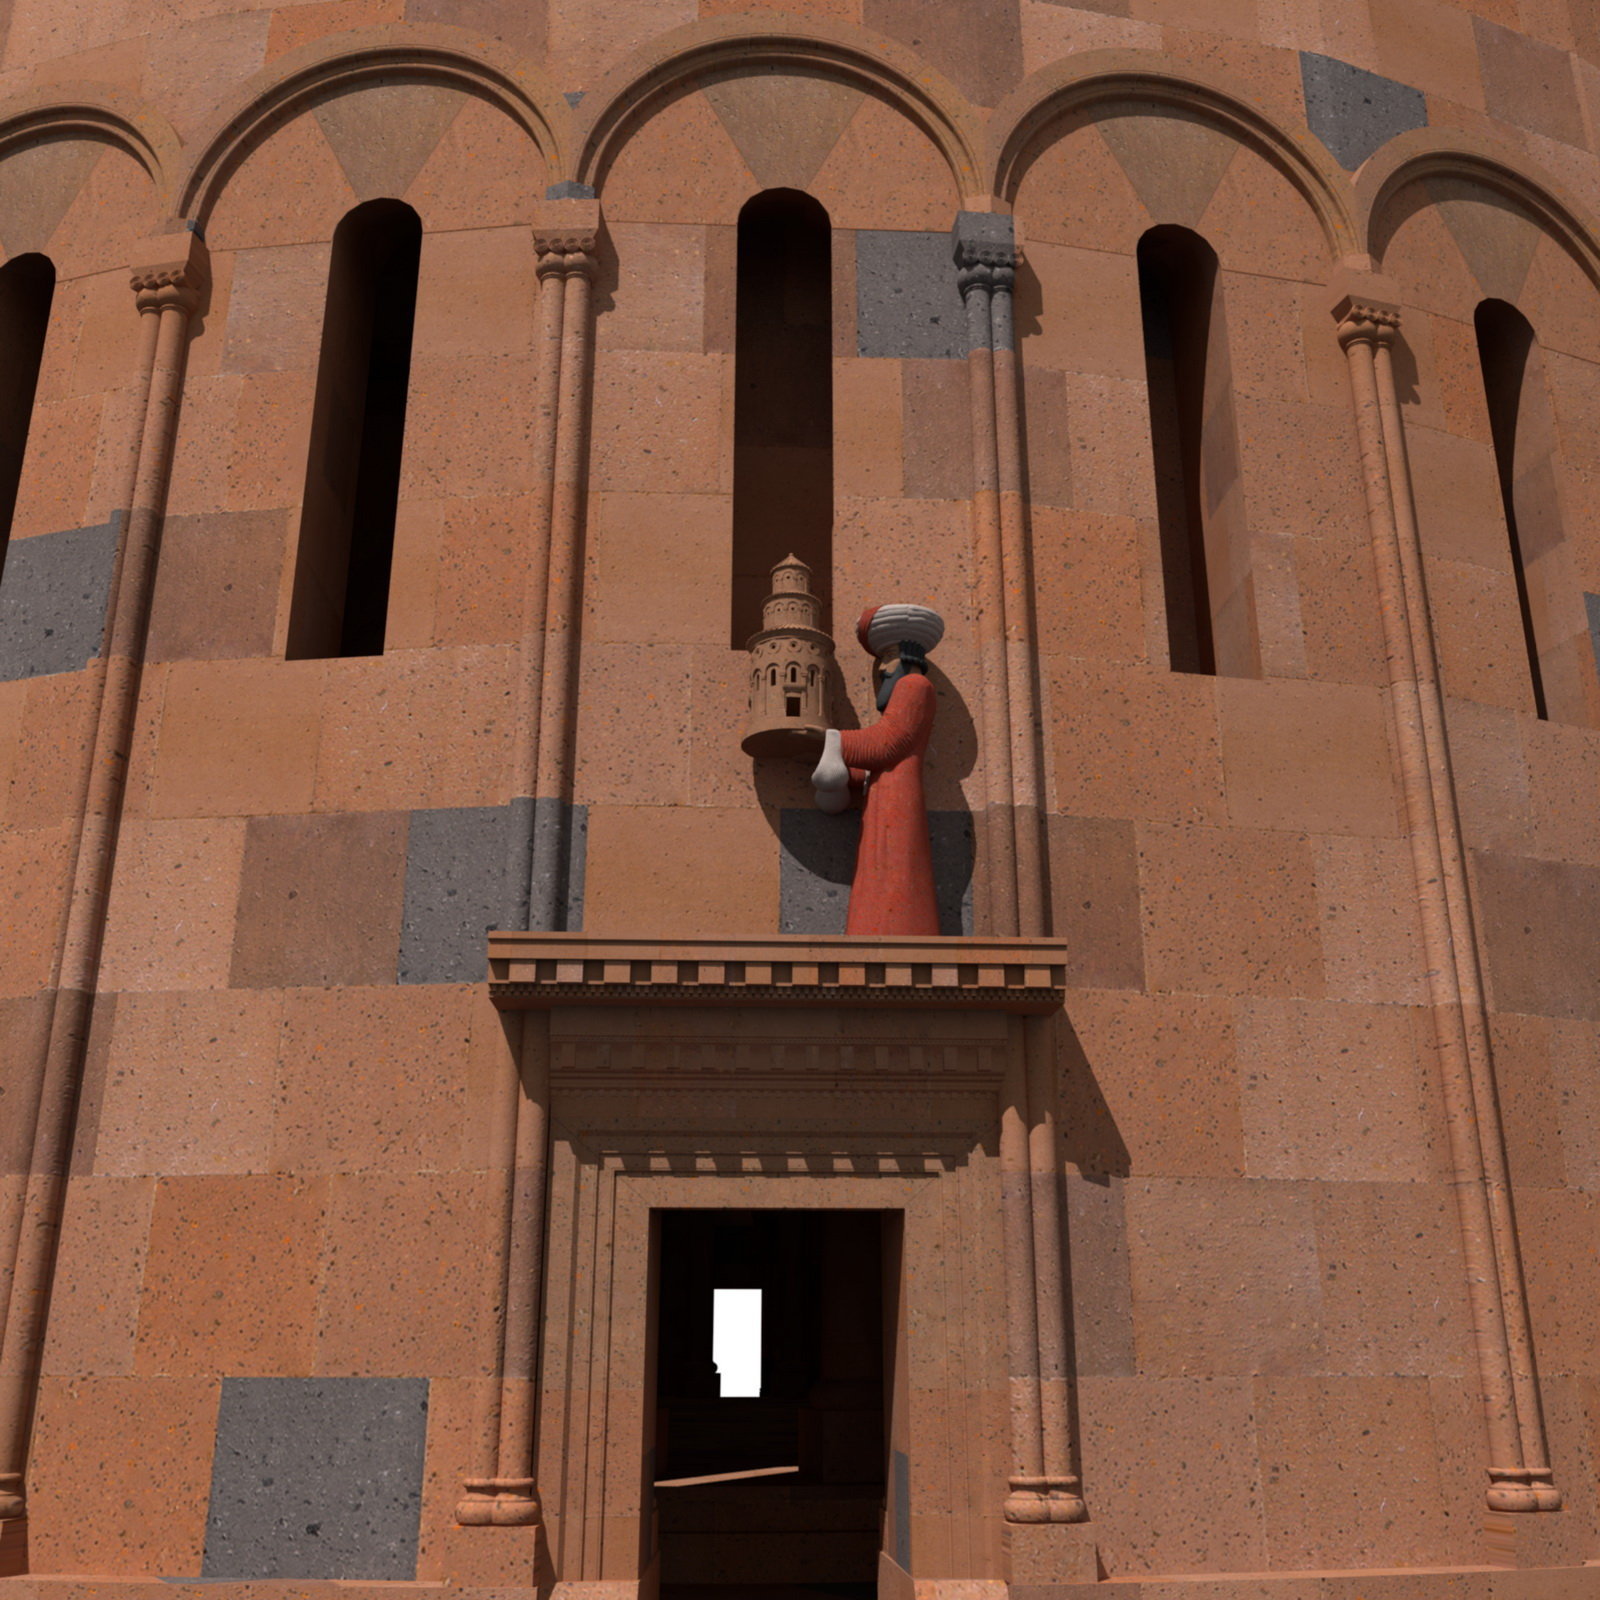 Ermeni uzmanlar, "1001 kiliseler şehri" Ani'nin sanal ikizini hazırlıyor